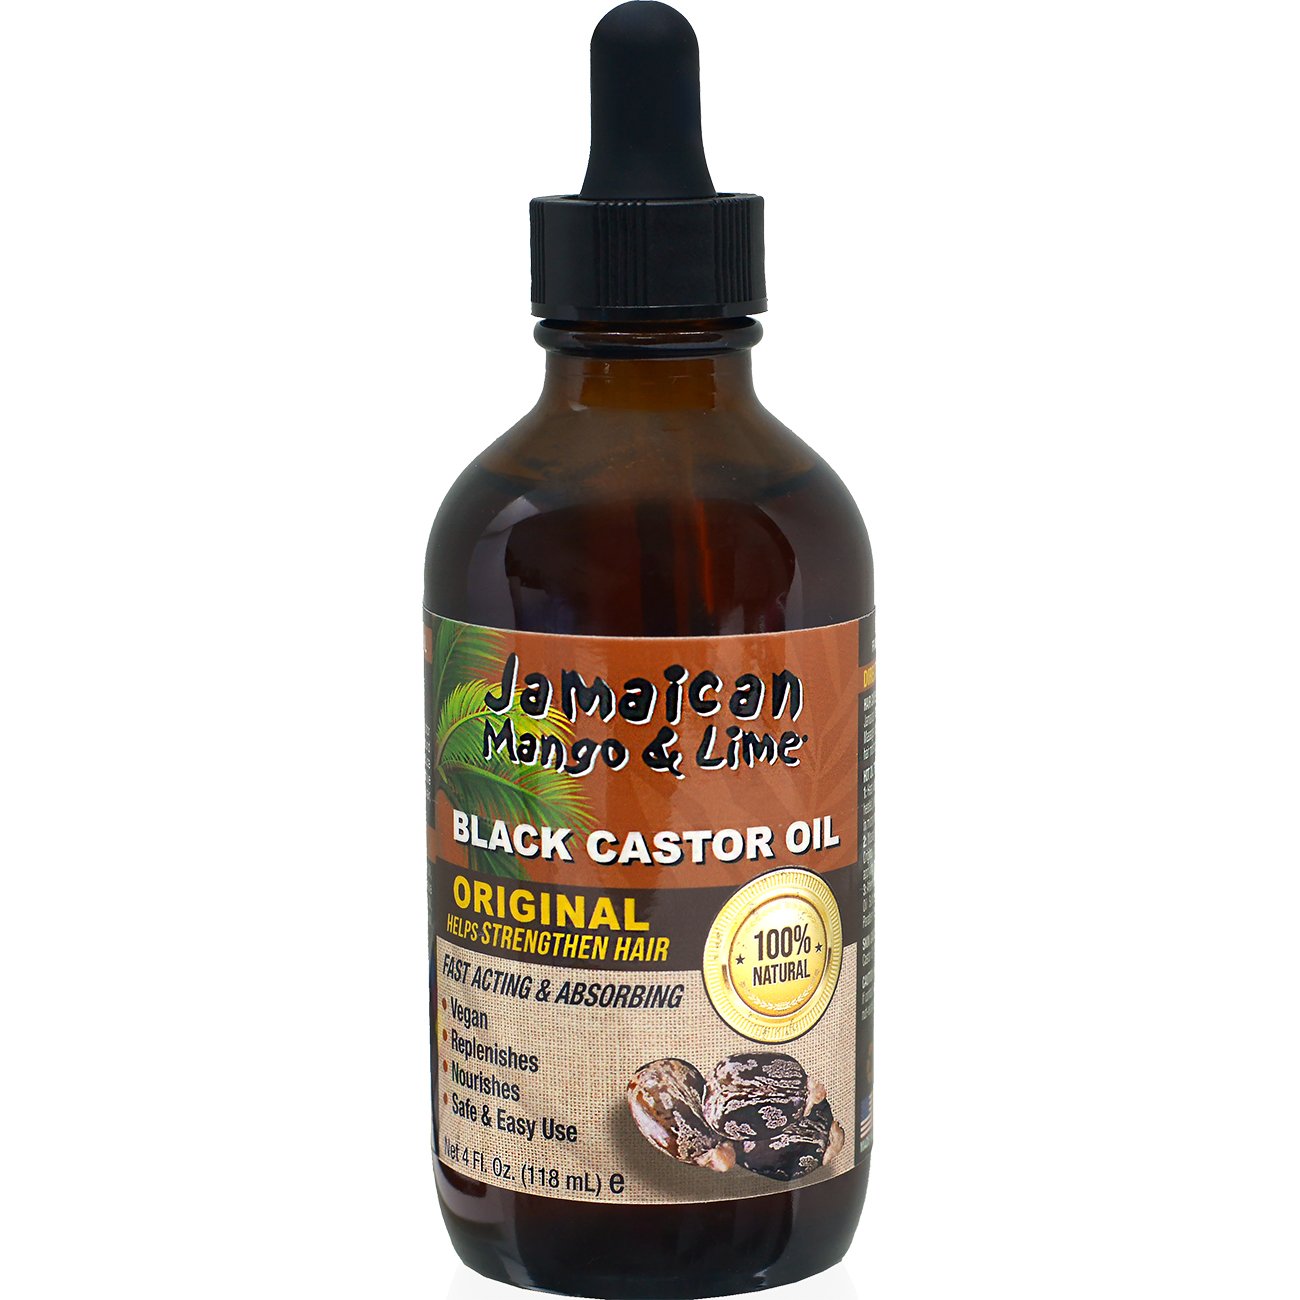 Jamaican Mango & Lime Black Castor Oil, Original - Shop Hair Care at H-E-B